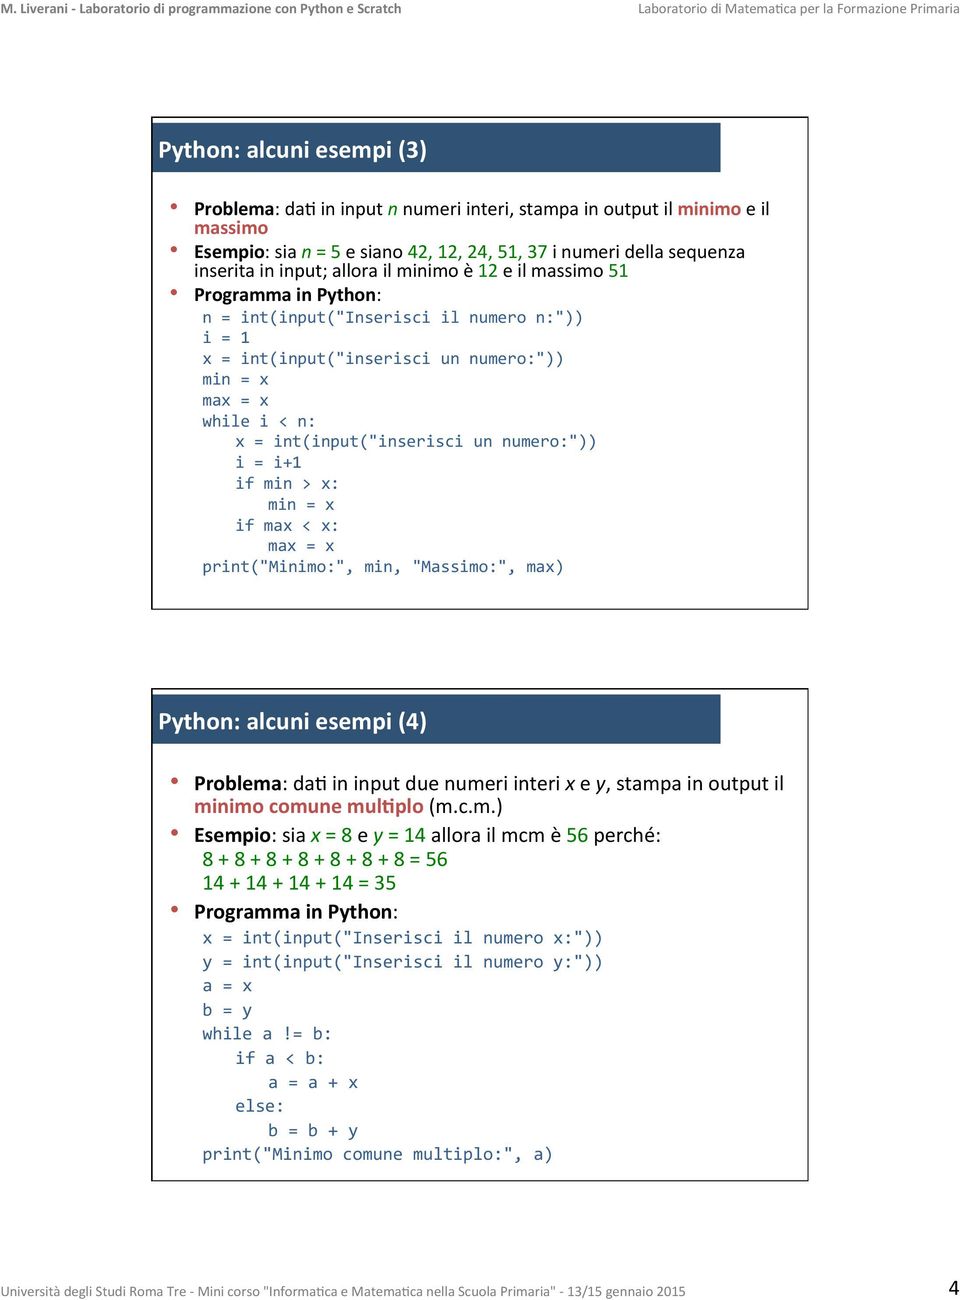 un numero:")) i = i+1 if min > x: min = x if max < x: max = x print("minimo:", min, "Massimo:", max) Python: alcuni esempi (4) Problema: da- in input due numeri interi x e y, stampa in output il